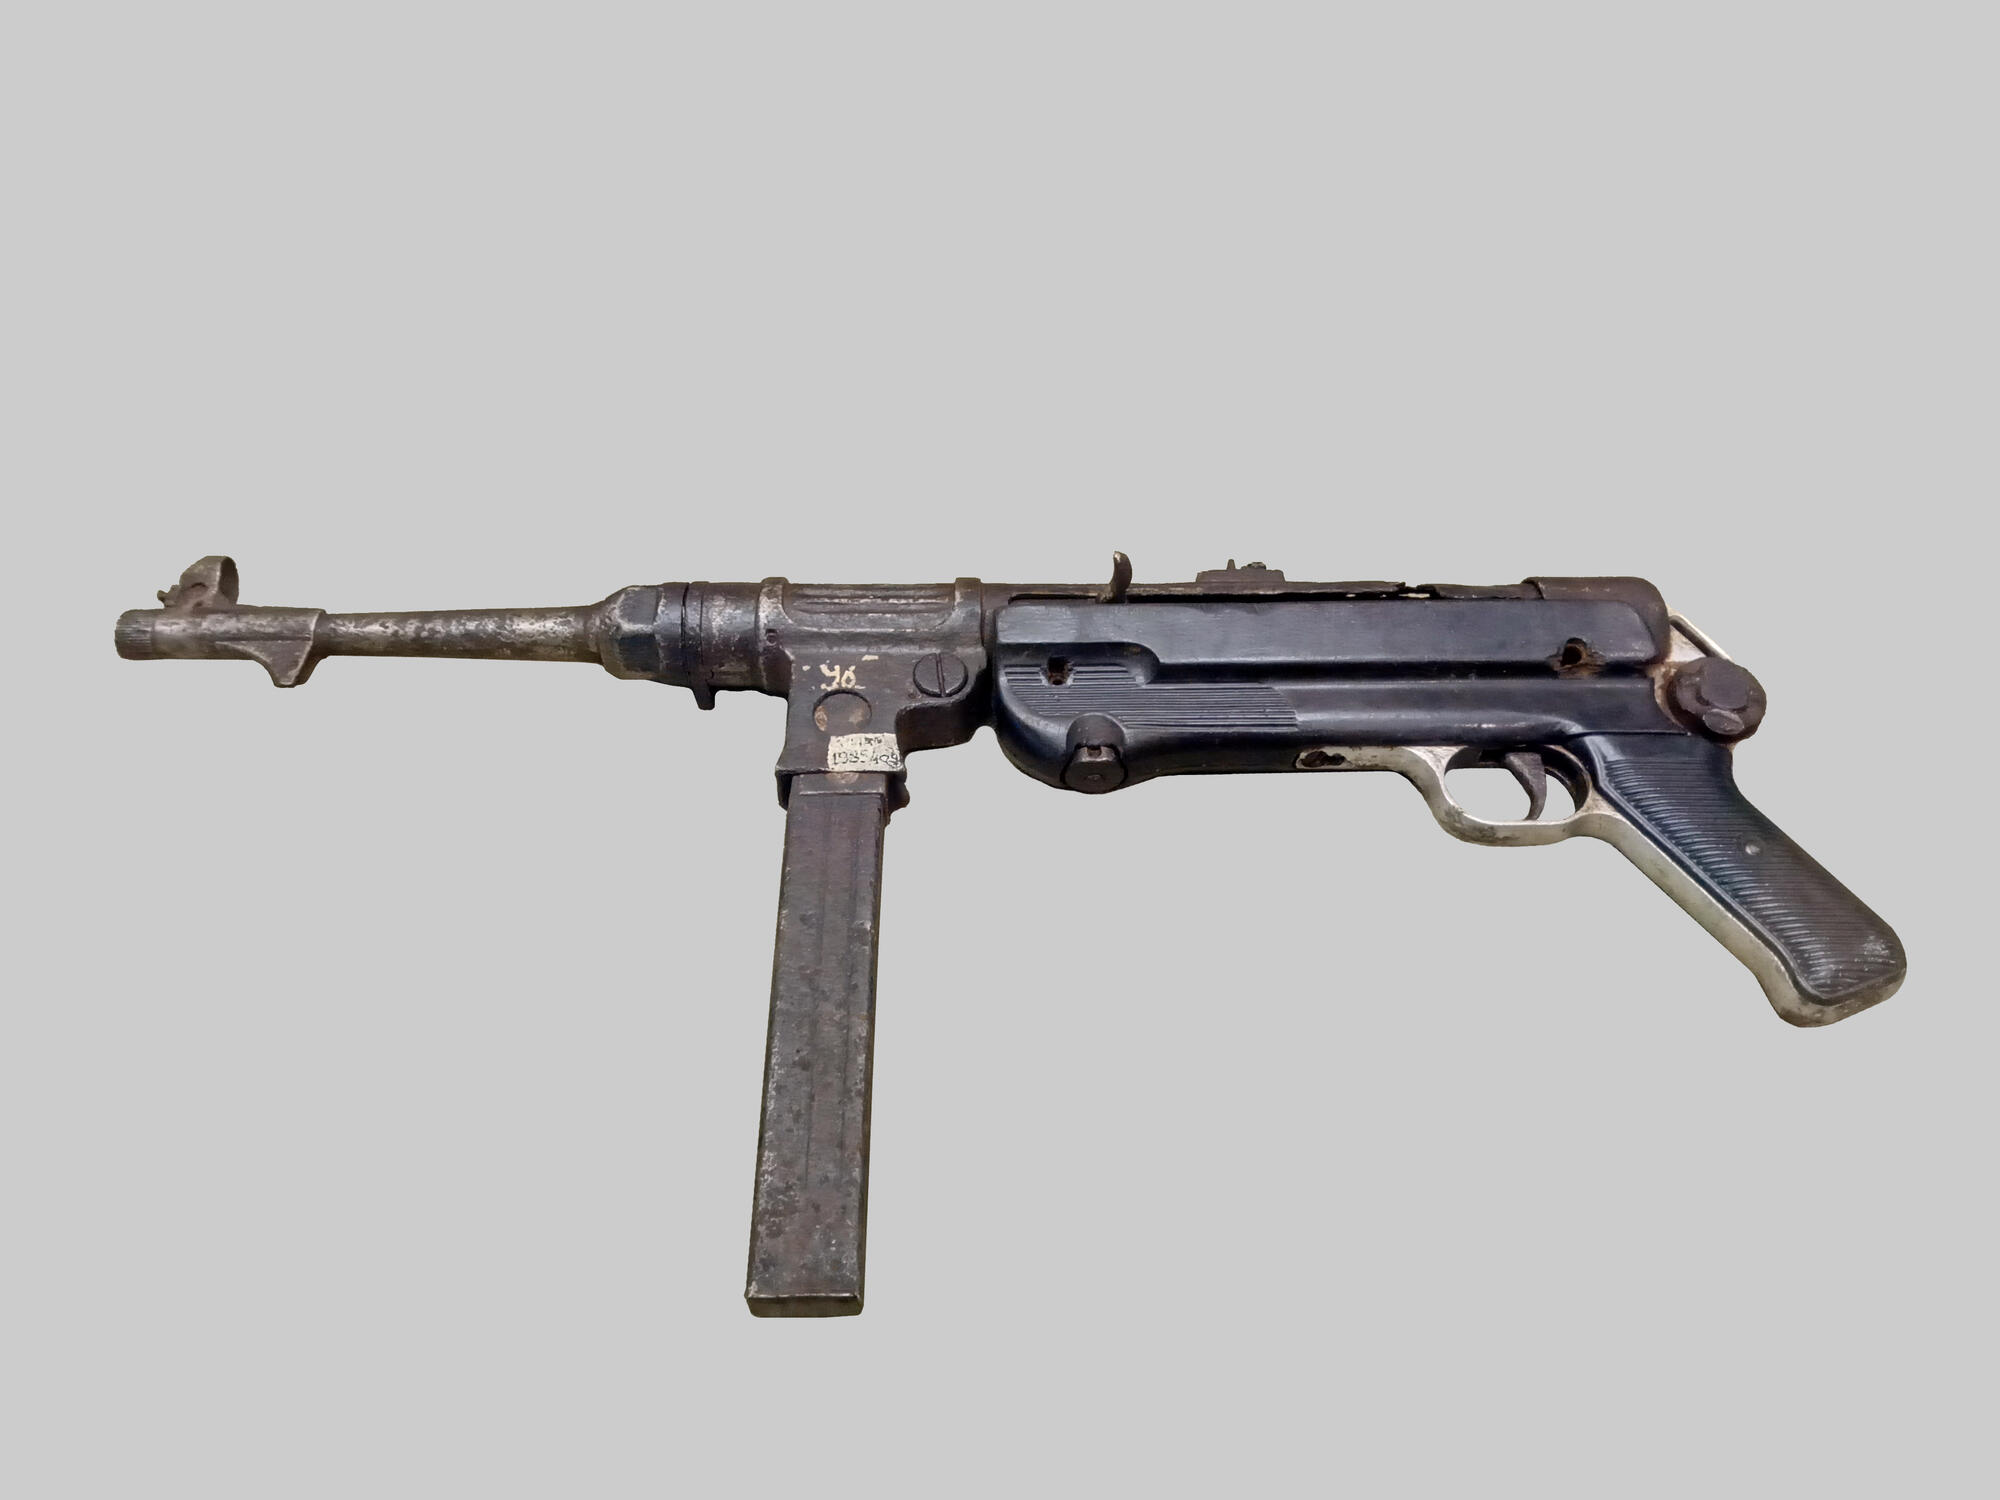 Пистолет-пулемет МП-38. Подробное описание экспоната, аудиогид, интересныефакты. Официальный сайт Artefact